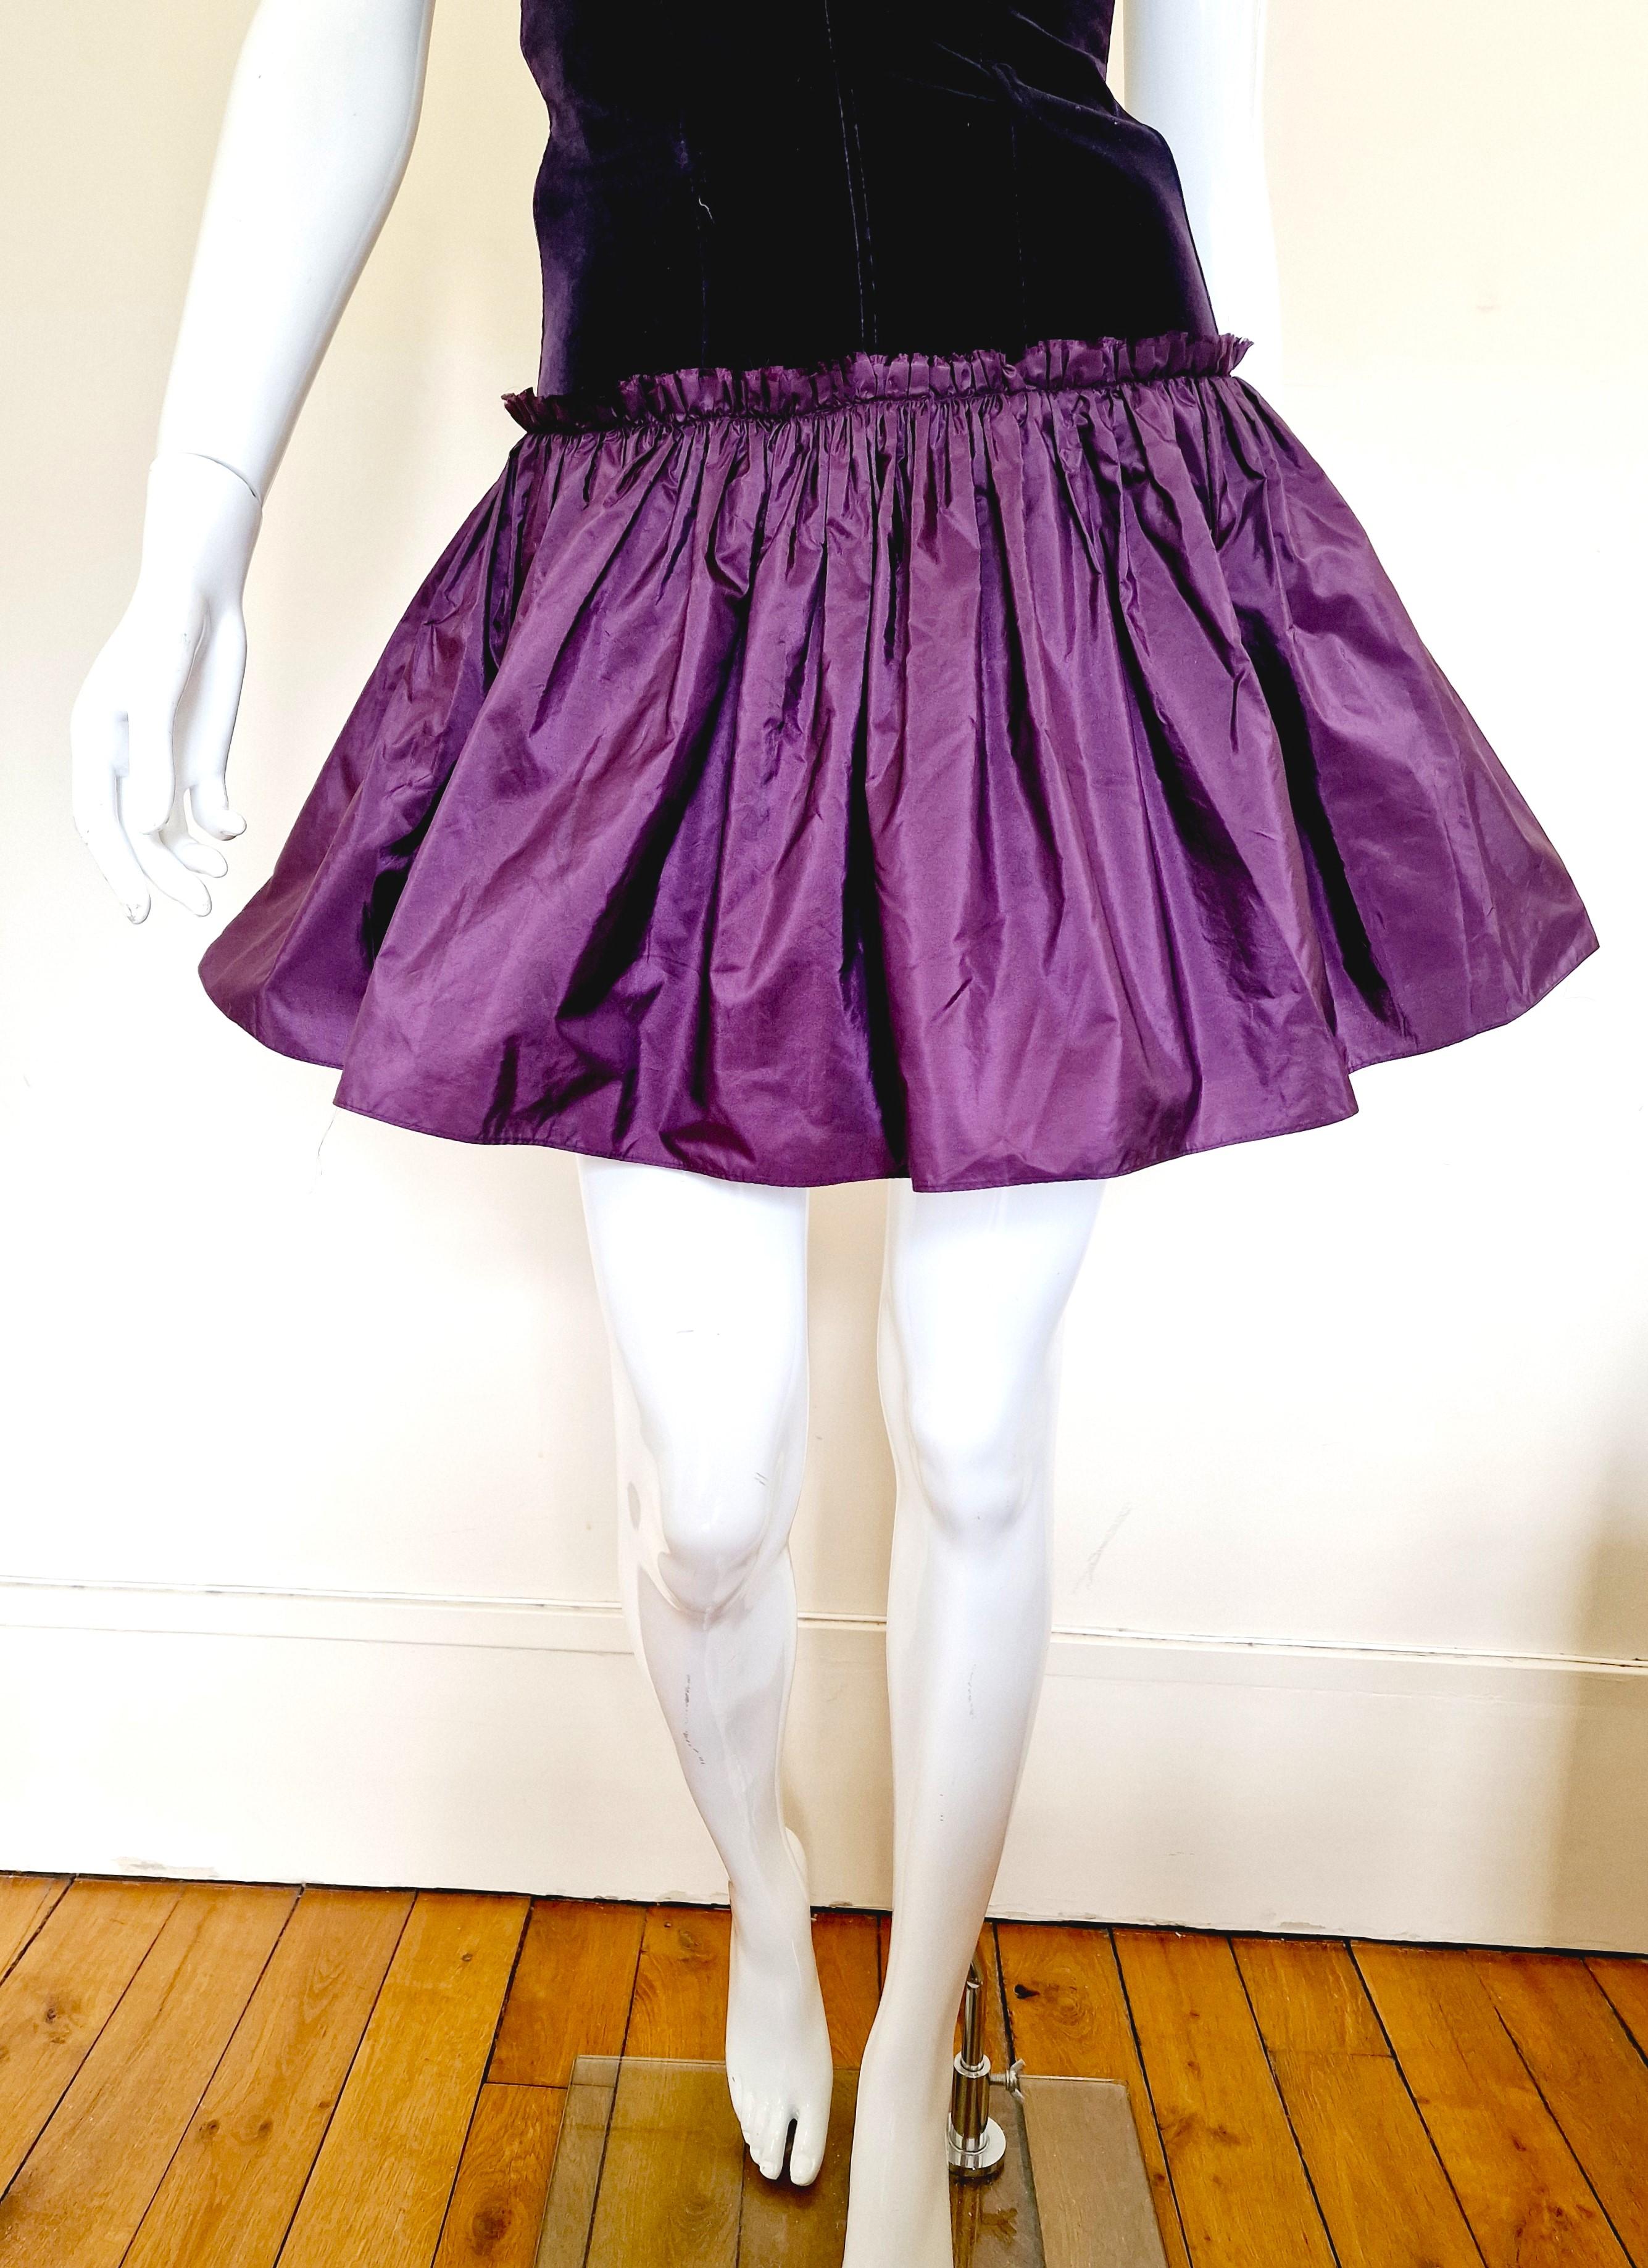 Alexander McQueen Corset Bustier Lace Up Tutu Petticoat Violet Medium Gown Dress For Sale 1